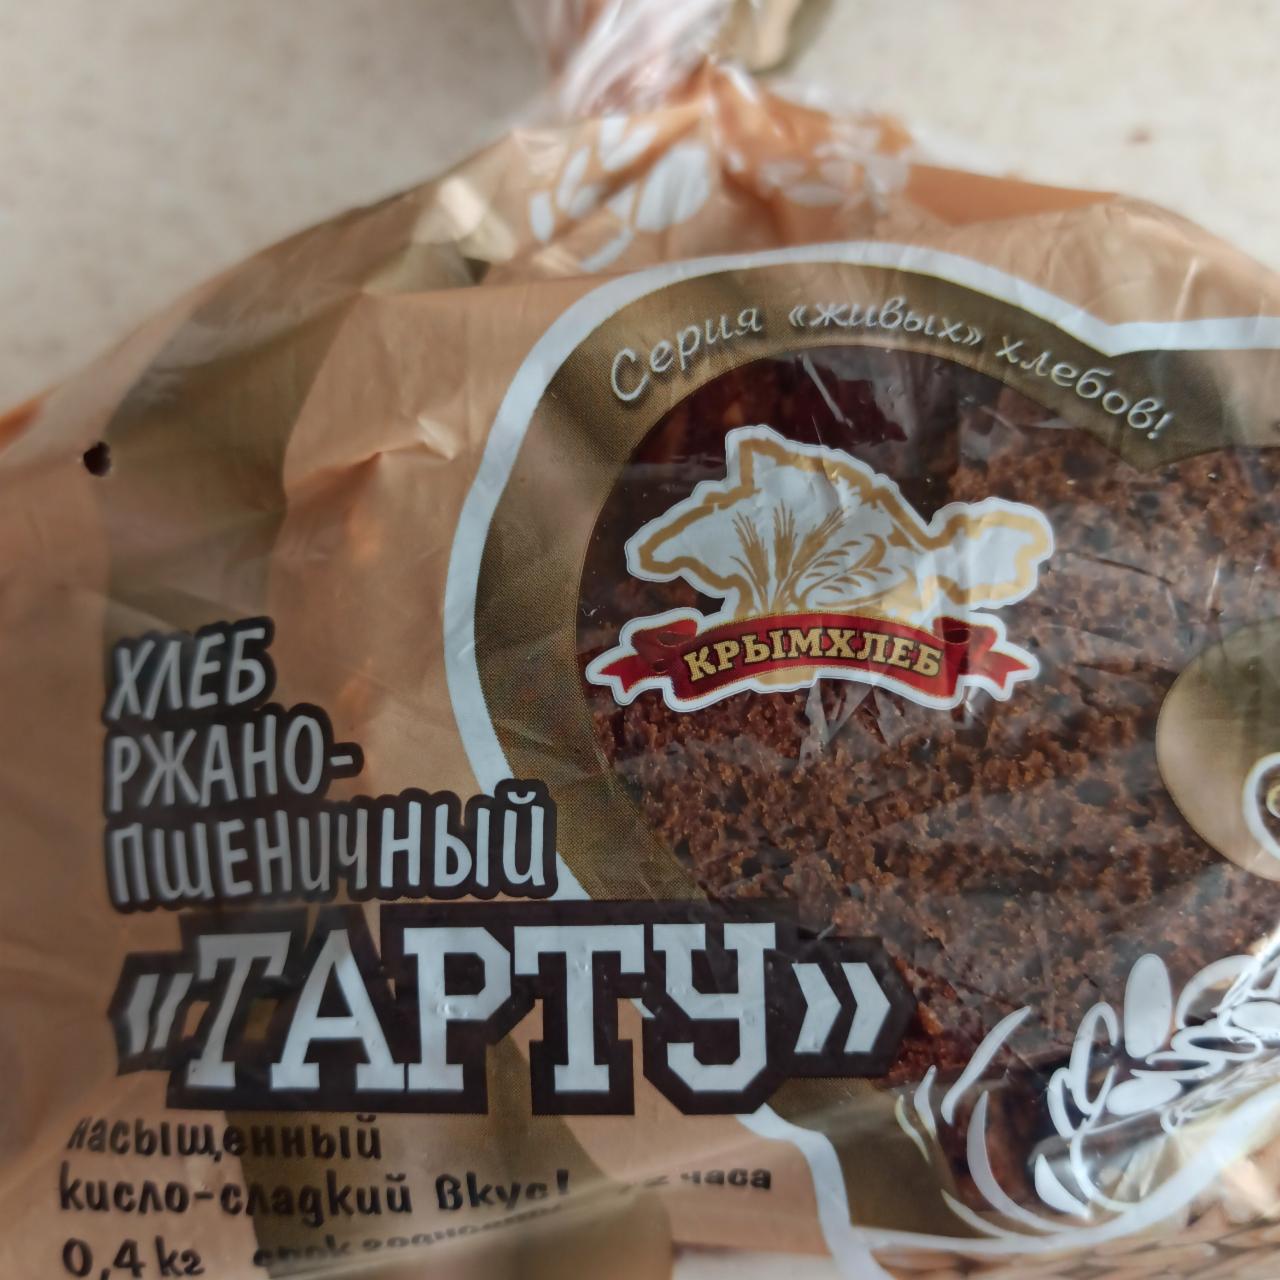 Фото - хлеб ржано-пшеничный Тарту Крымхлеб